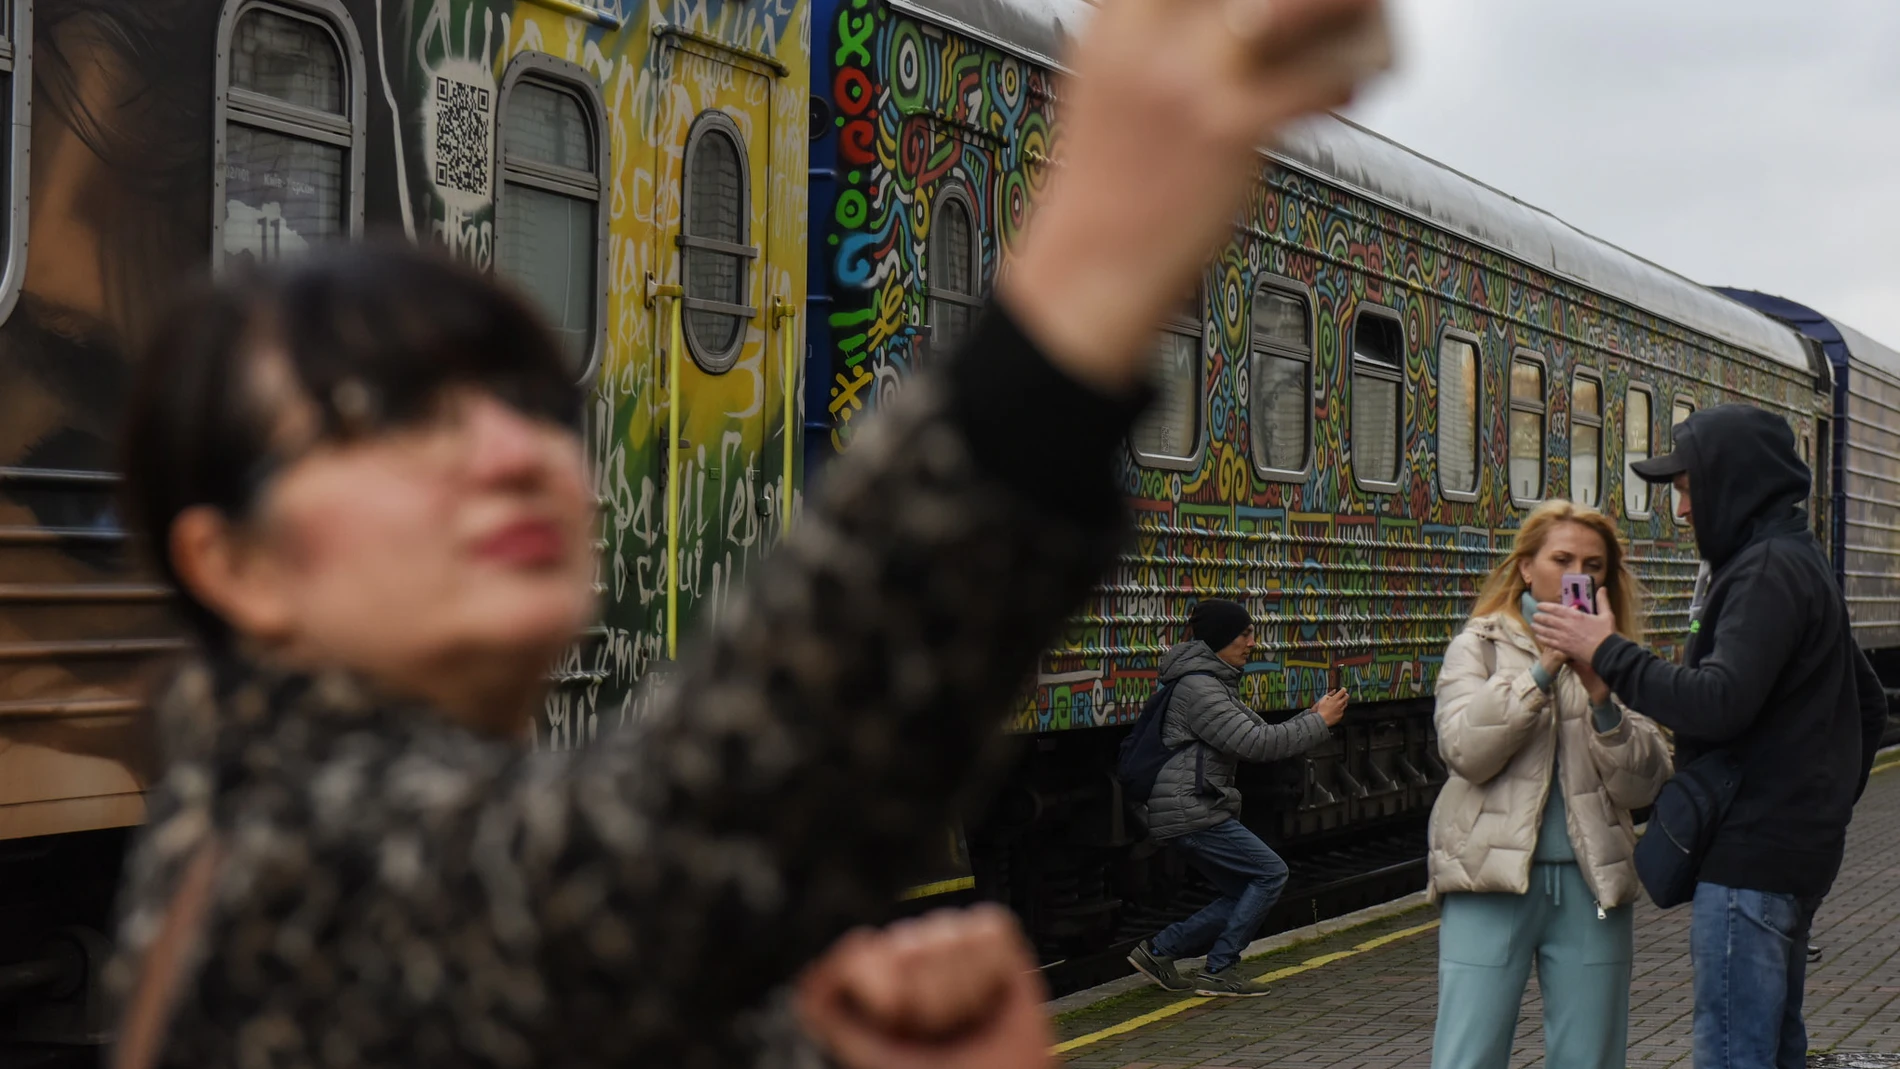 Personas con teléfonos móviles se toman "selfies" cerca de un tren en la estación de tren de Jersón, en el sur de Ucrania